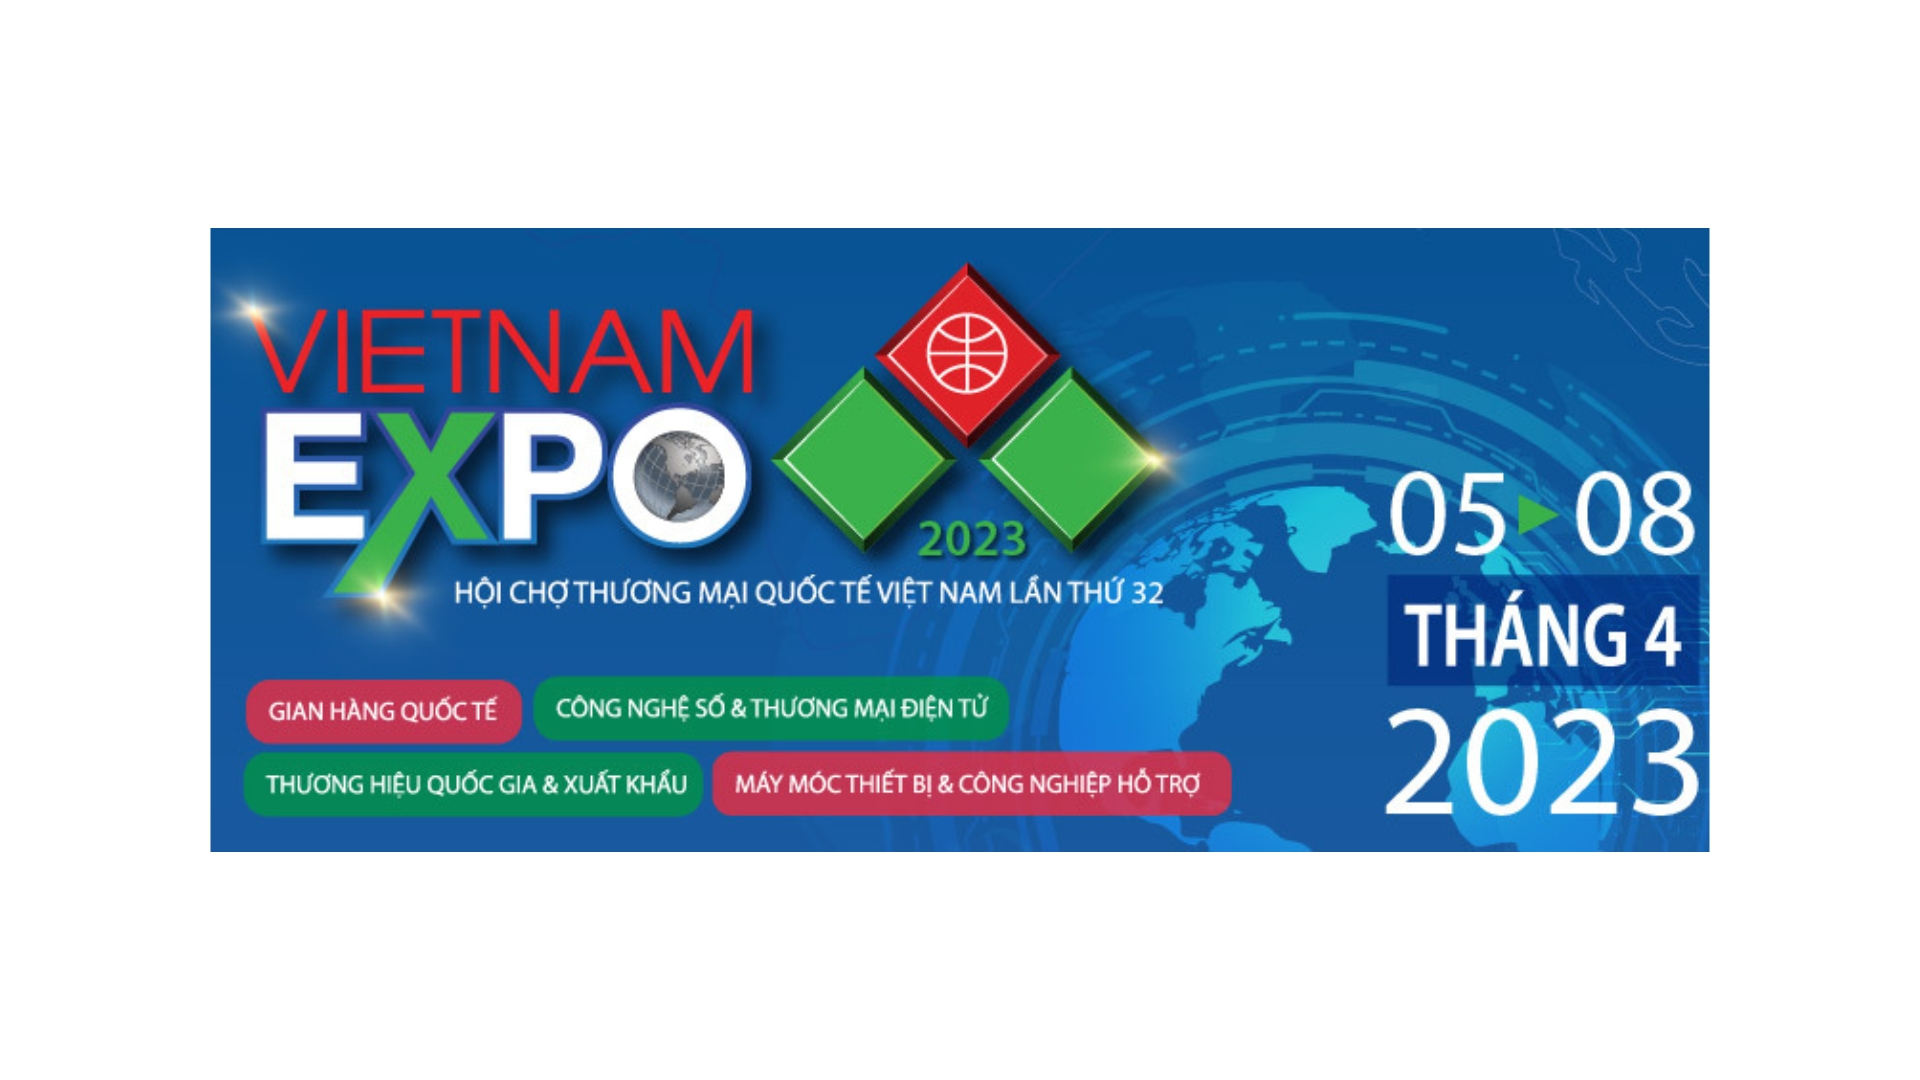 VIETNAM EXPO 2023 - "Đồng hành cùng doanh nghiệp trong kỷ nguyên số" 